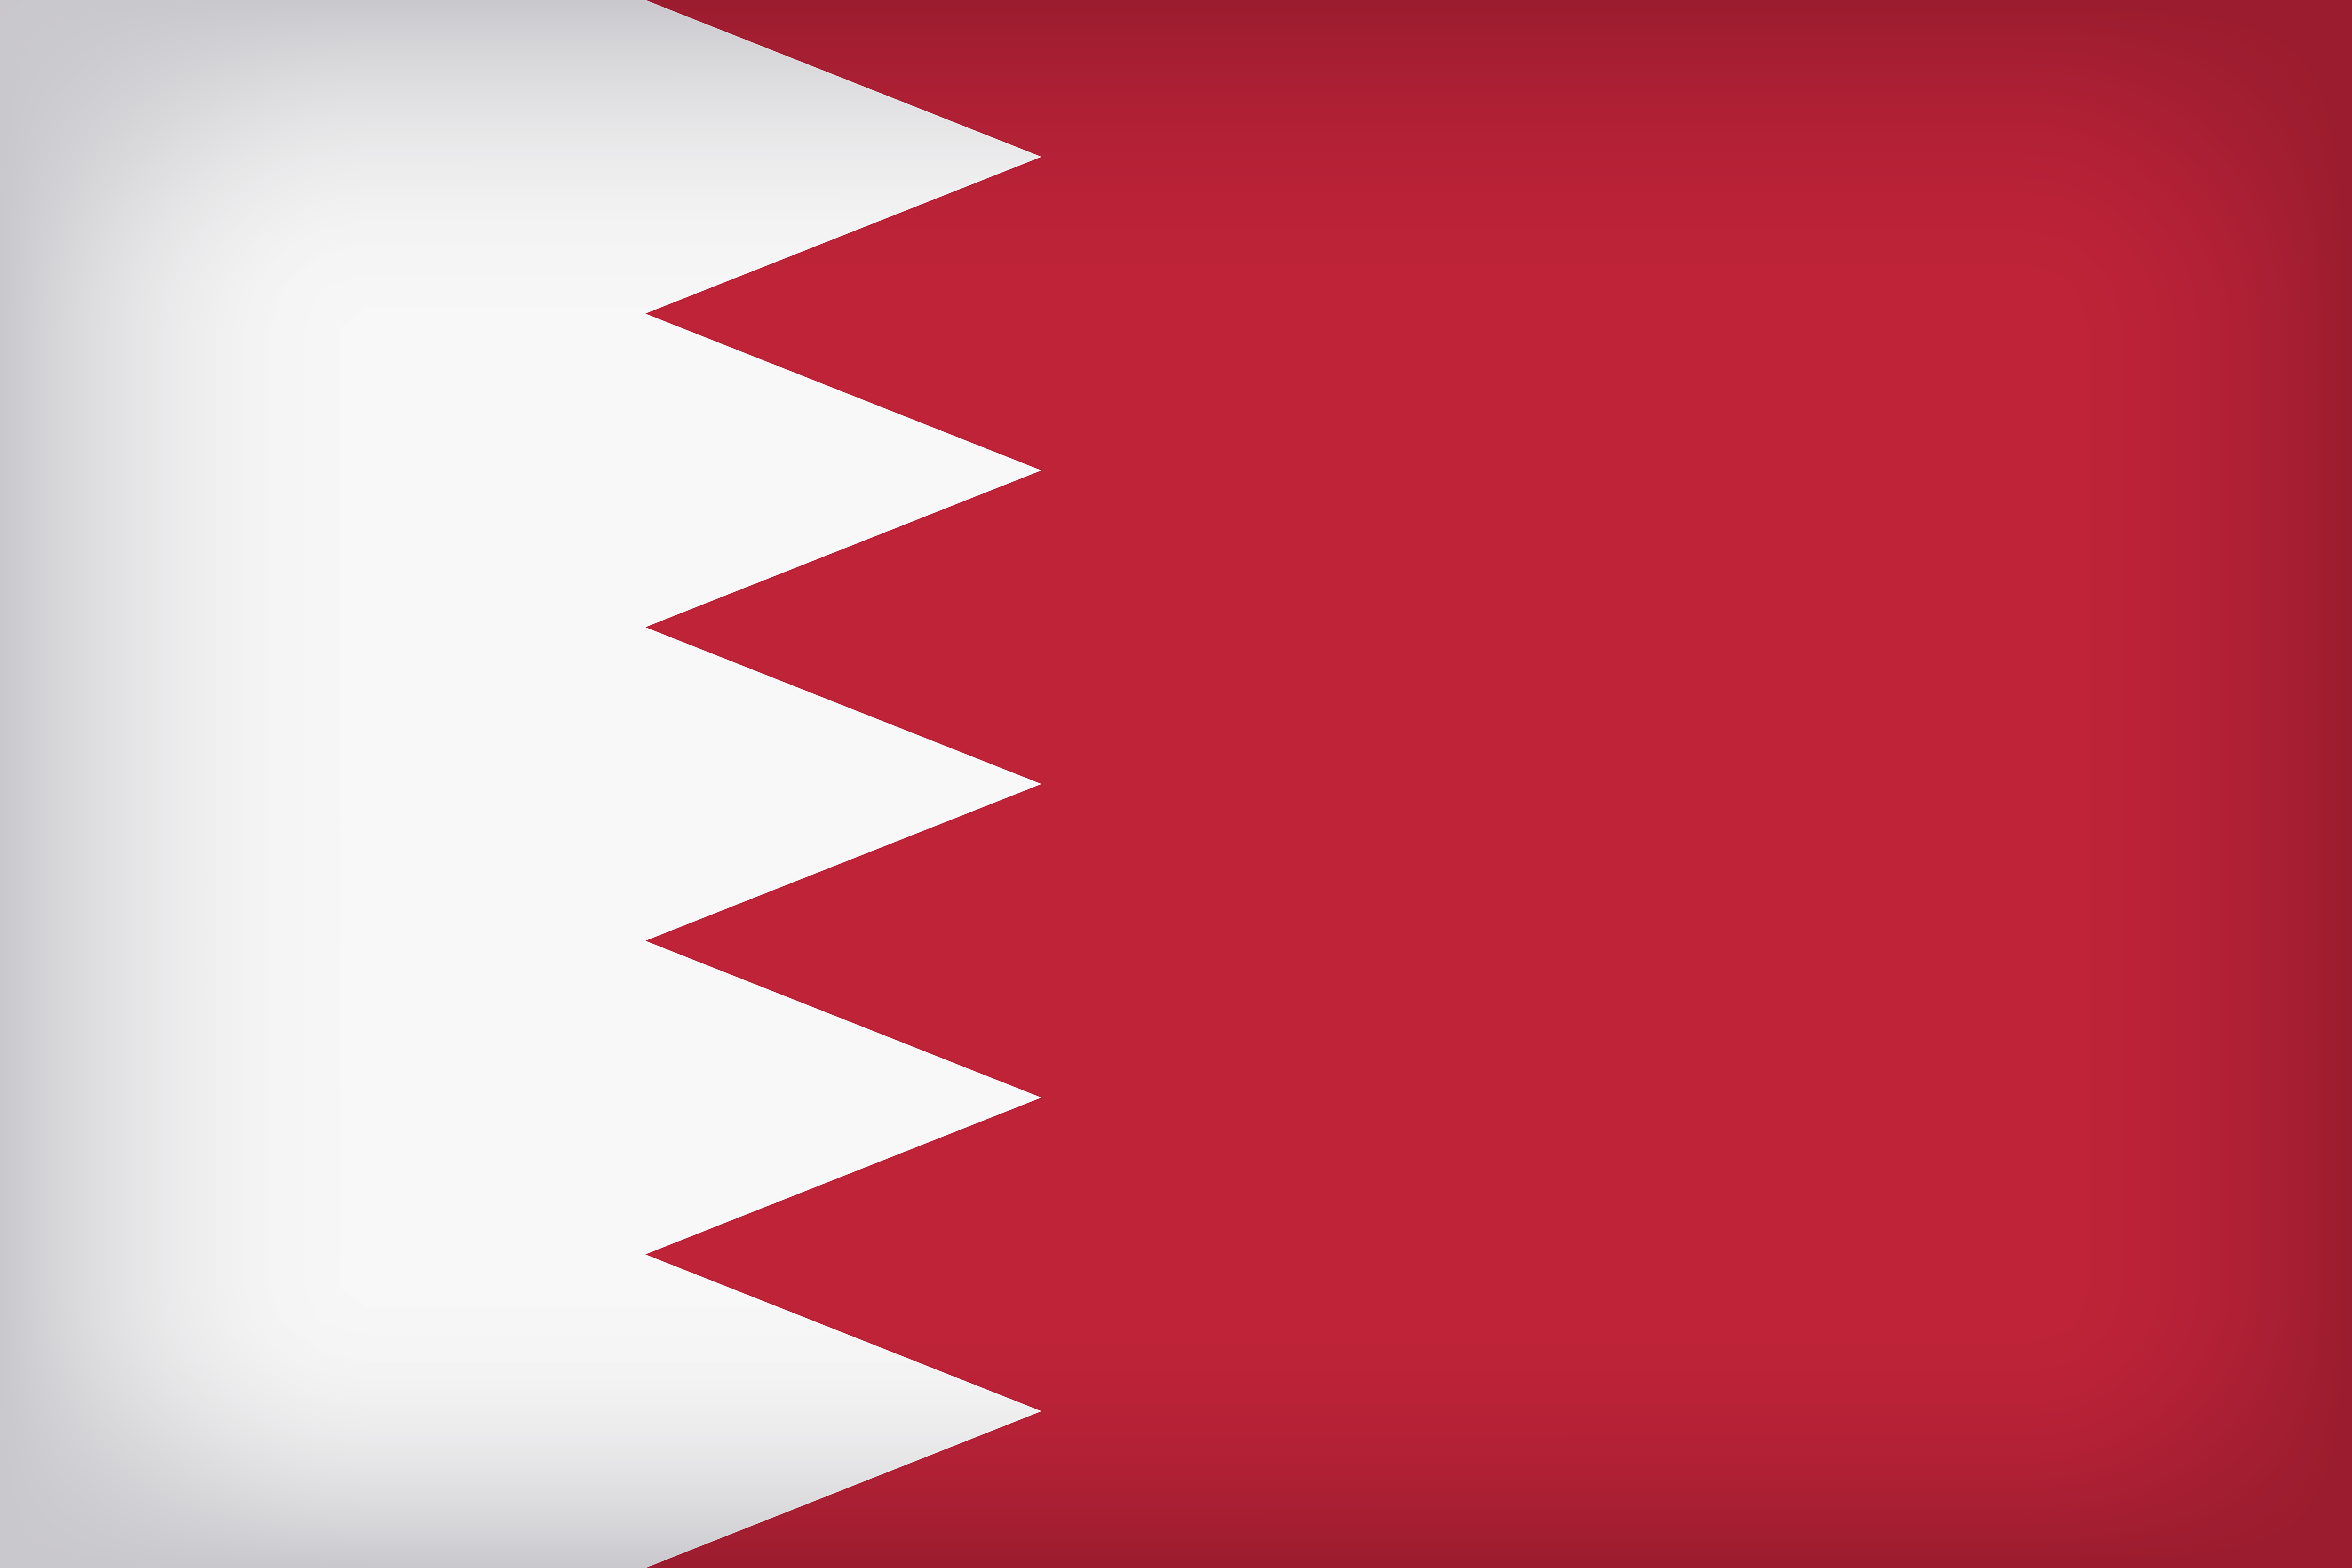 Bahrain Large Flag Quality Image